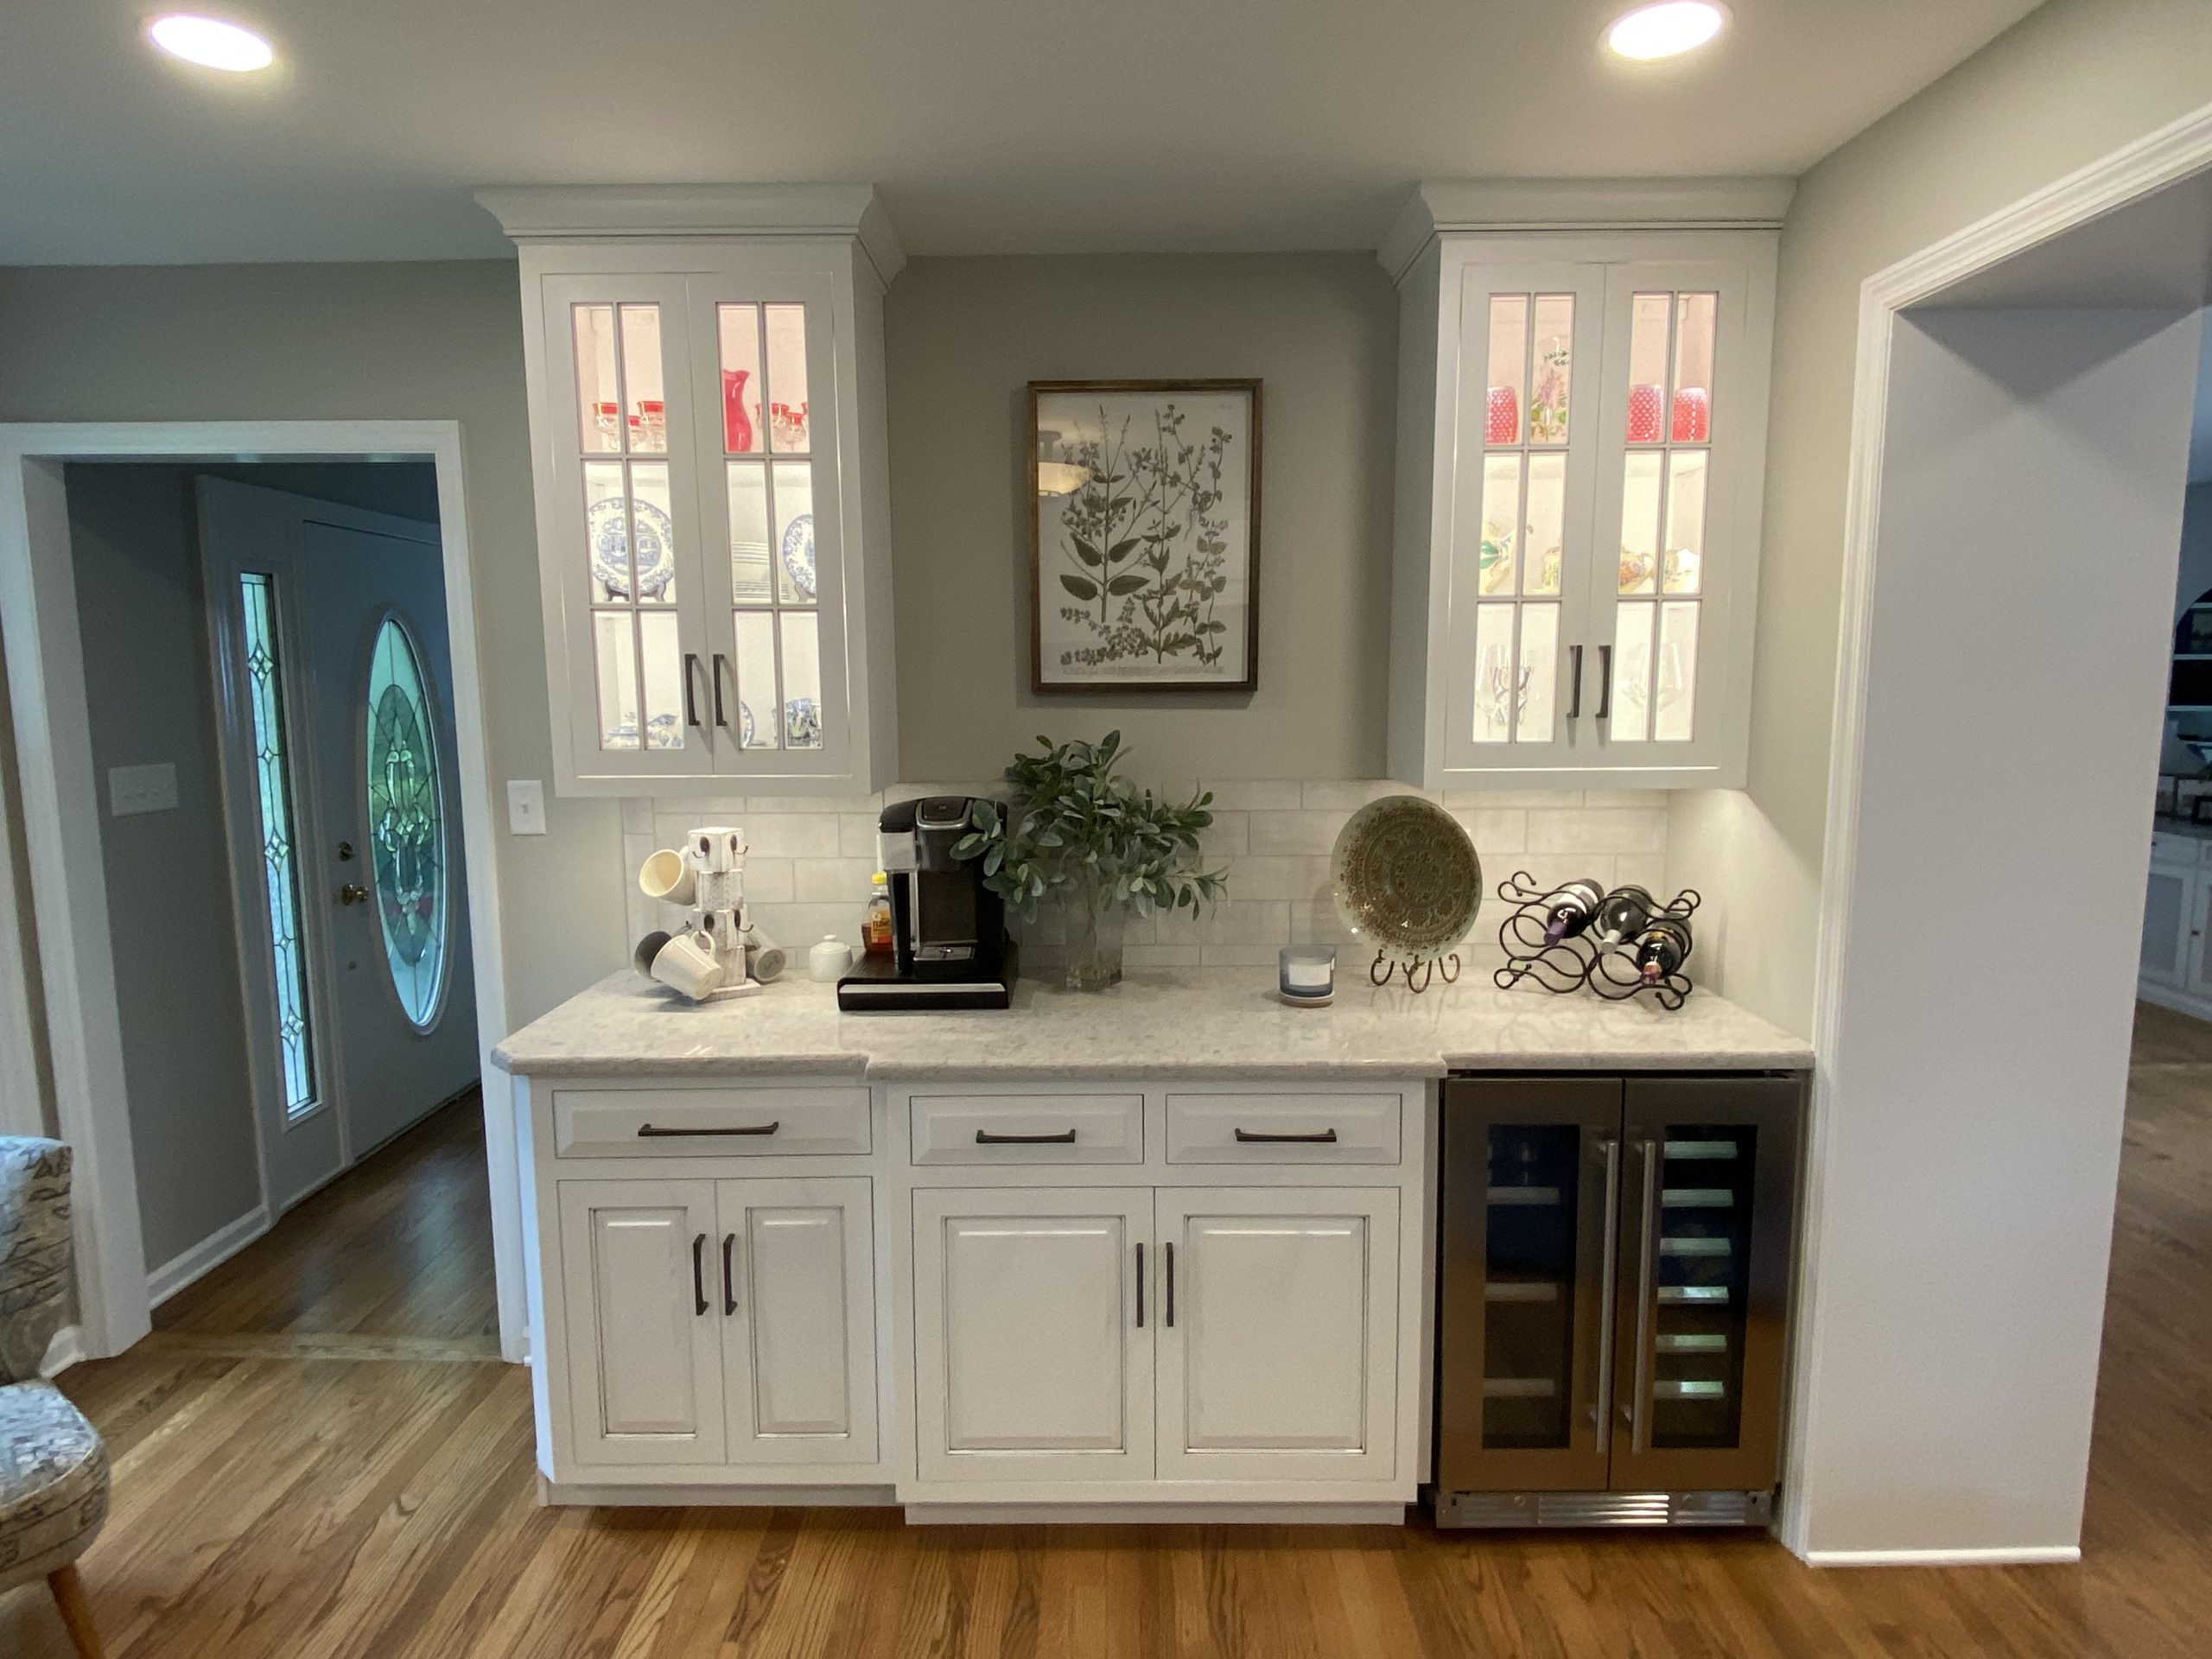 Conestoga Valley Kitchen Cabinets | Cabinets Matttroy